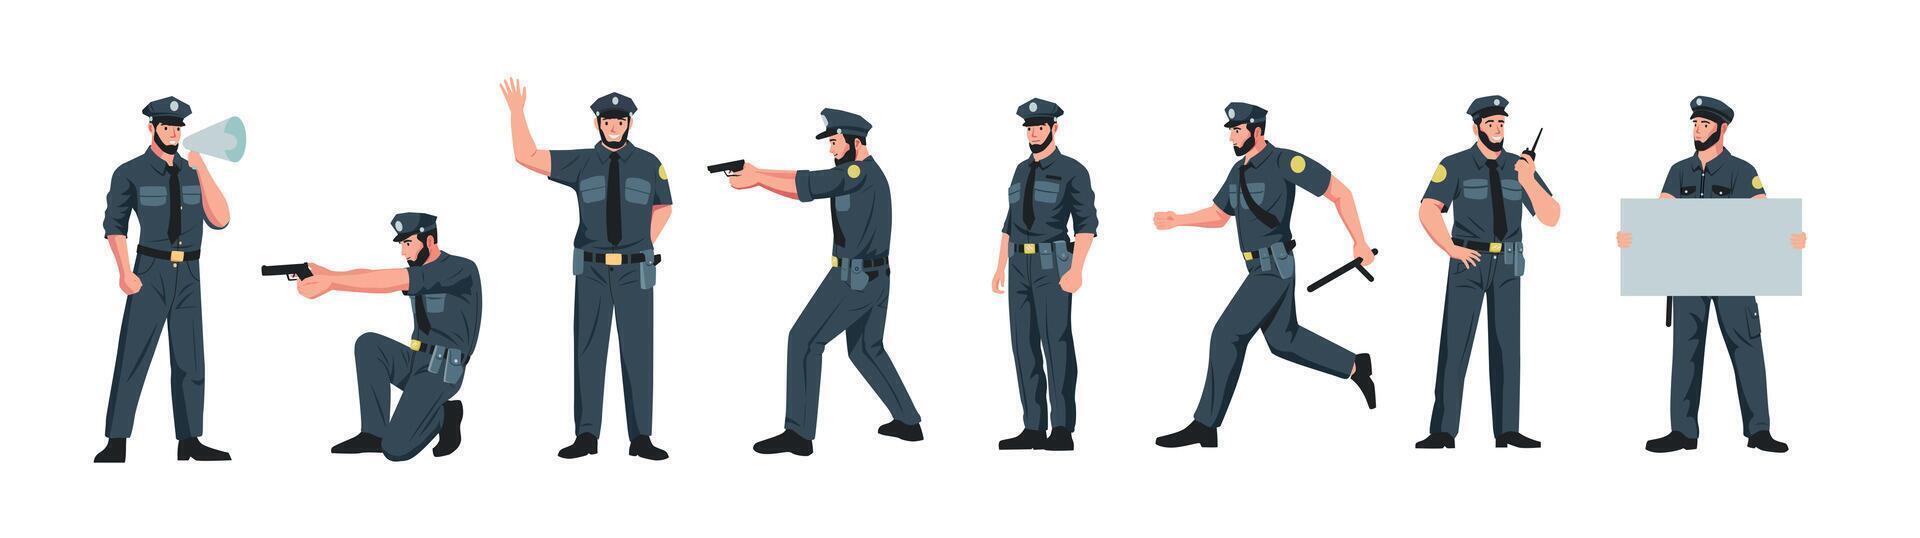 policía caracteres. dibujos animados policía oficial en diferente posa, dibujos animados patrulla policía y Guardia persona en uniforme haciendo seguridad justicia trabajo. vector conjunto